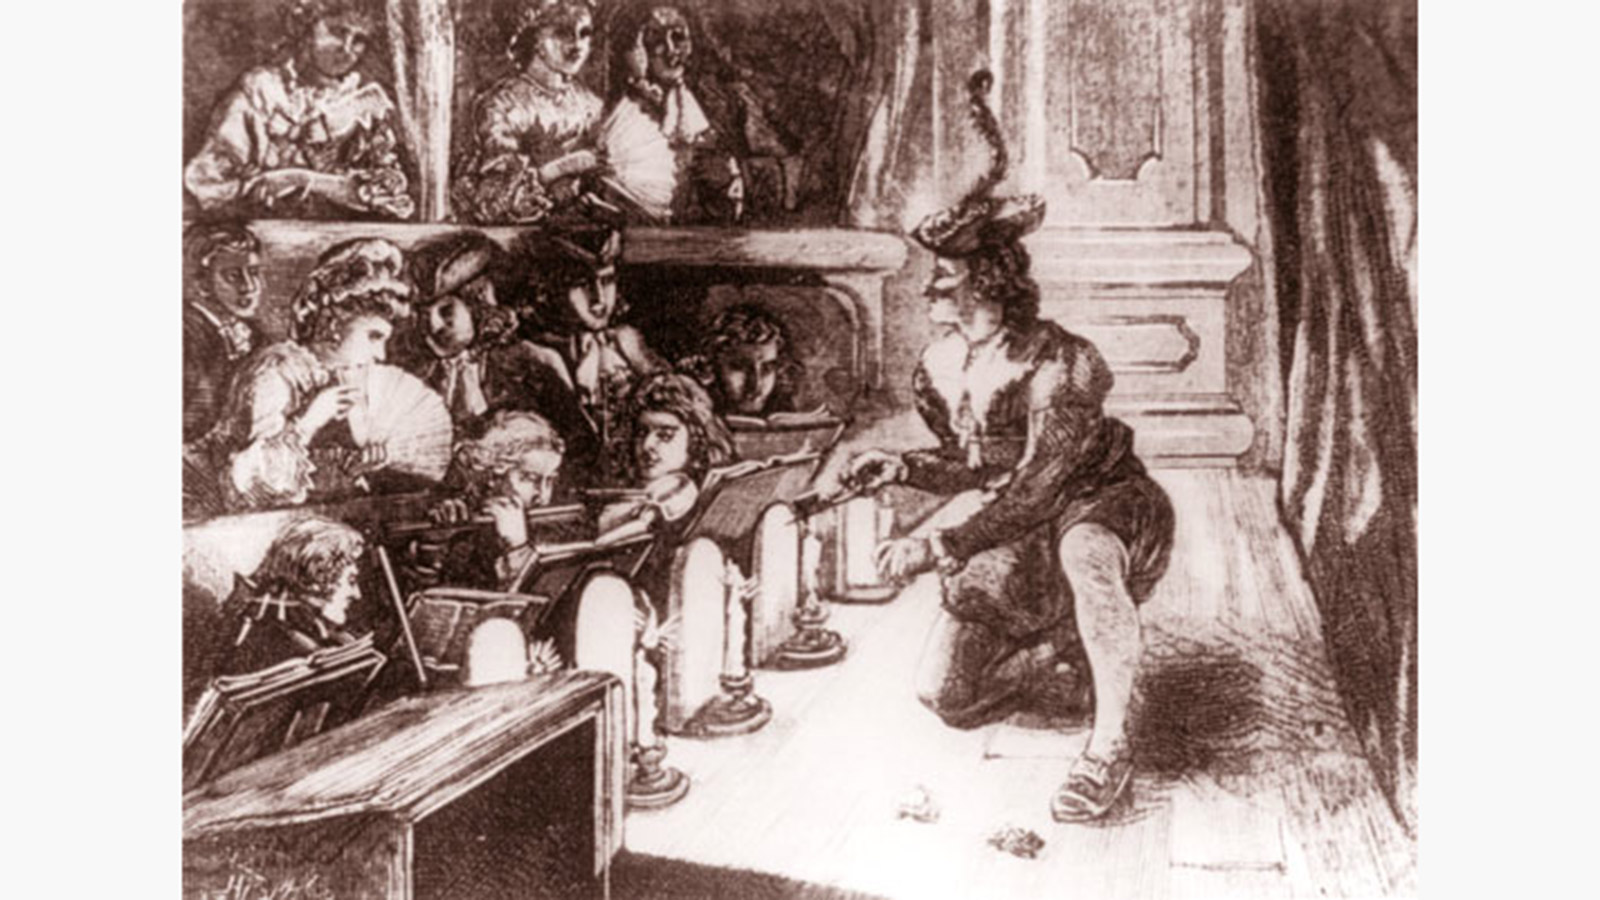 <p>Гравюра Candle-Snuffer&nbsp;(можно перевести как &laquo;Гасильник свечей&raquo;) неизвестного художника, которая была опубликована в The Illustrated Sporting and Dramatic News в 1876 году</p>